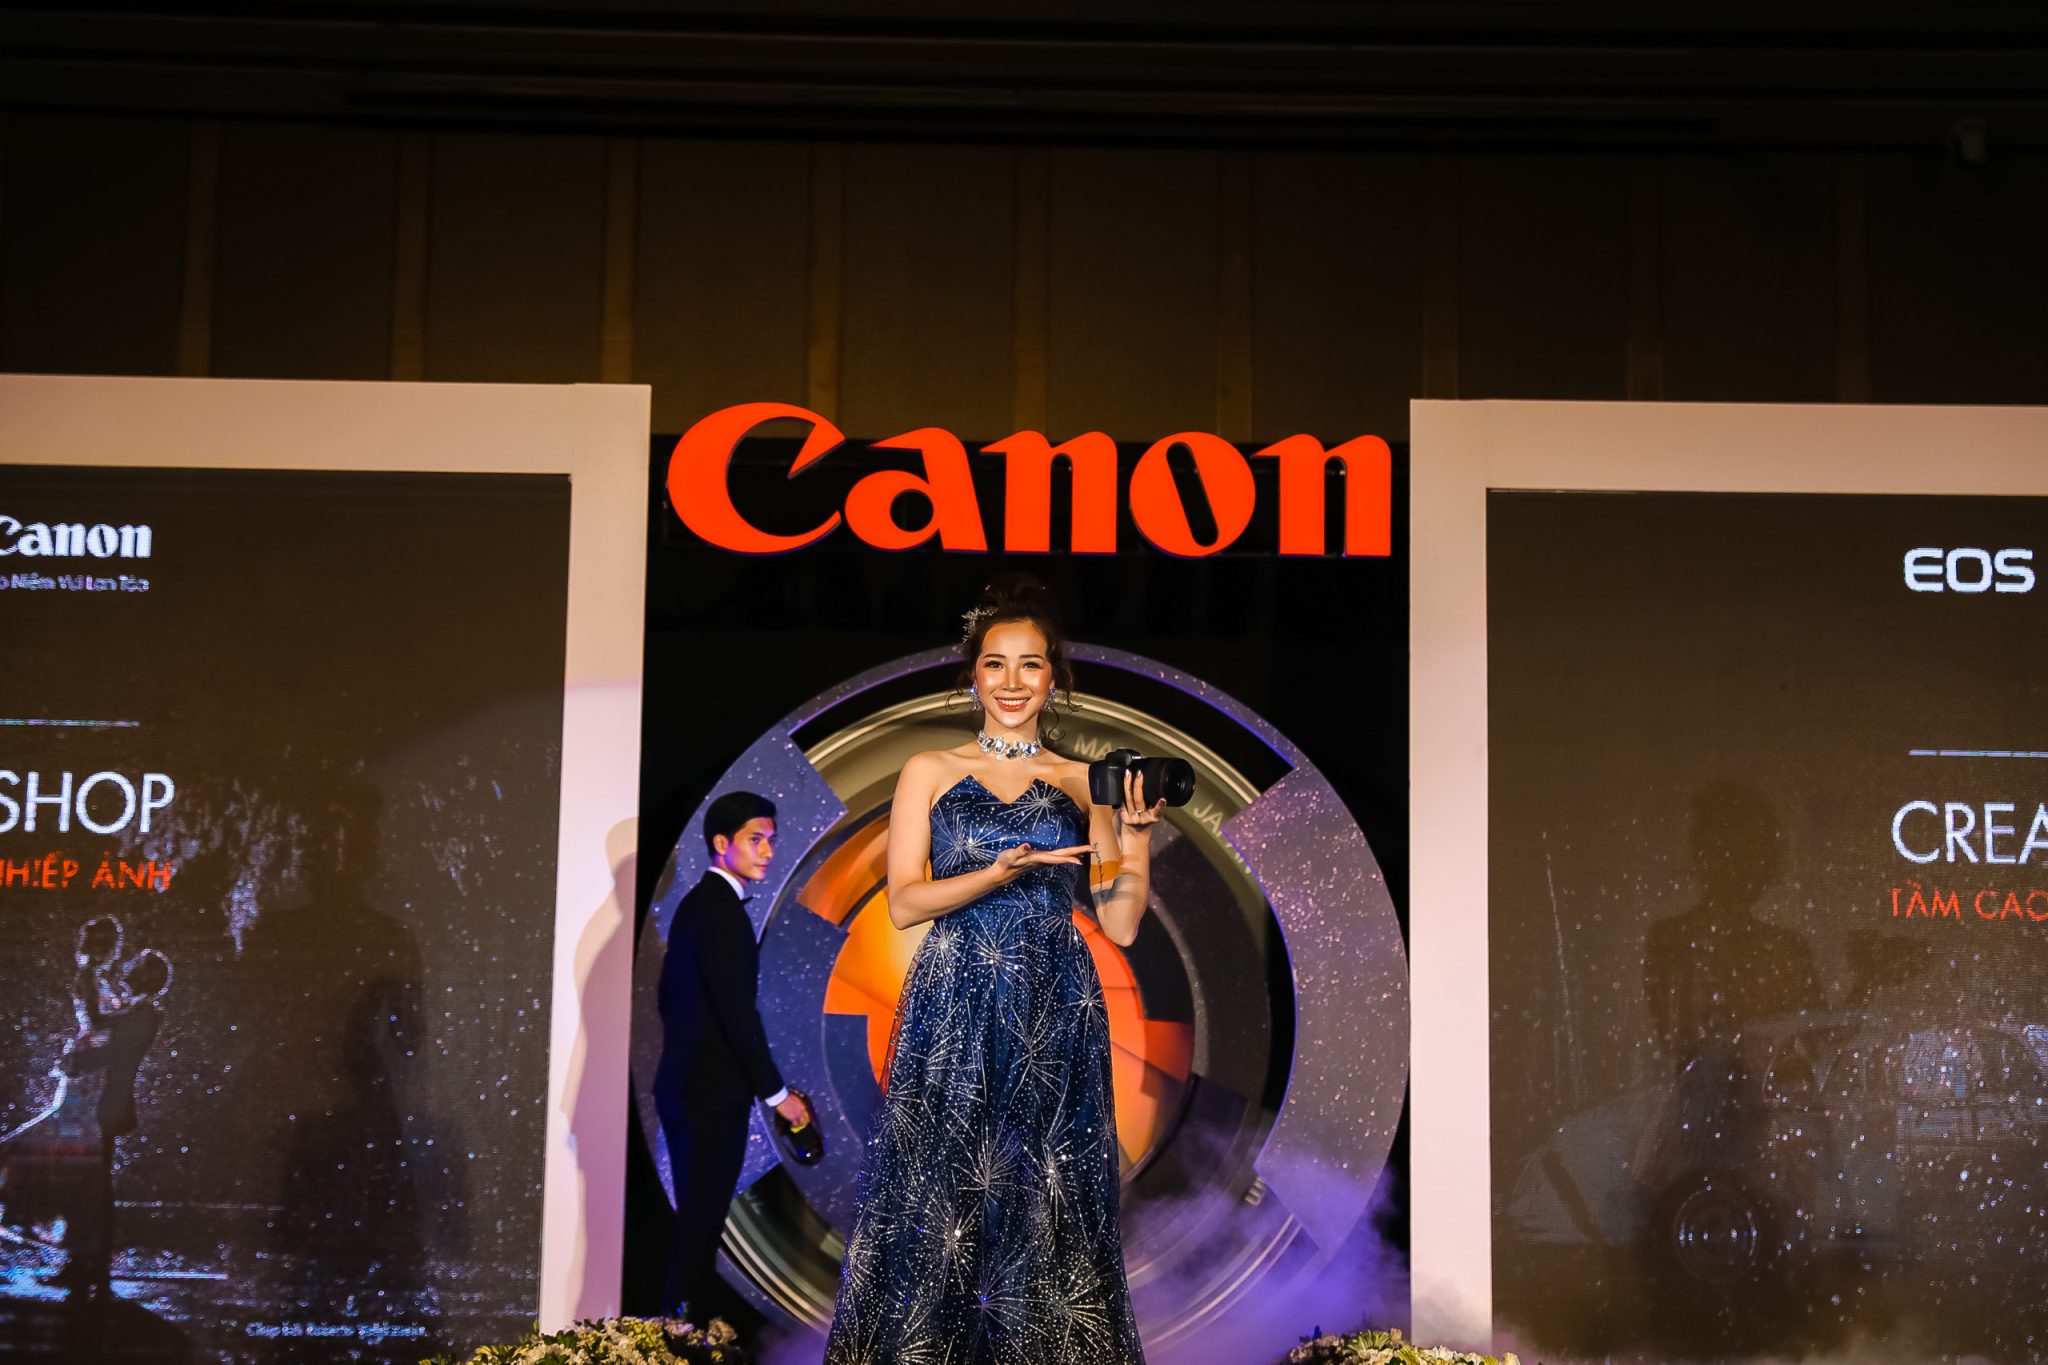 Canon EOS R làm nức lòng người yêu nhiếp ảnh trong sự kiện “Tầm cao mới của nghệ thuật nhiếp ảnh”